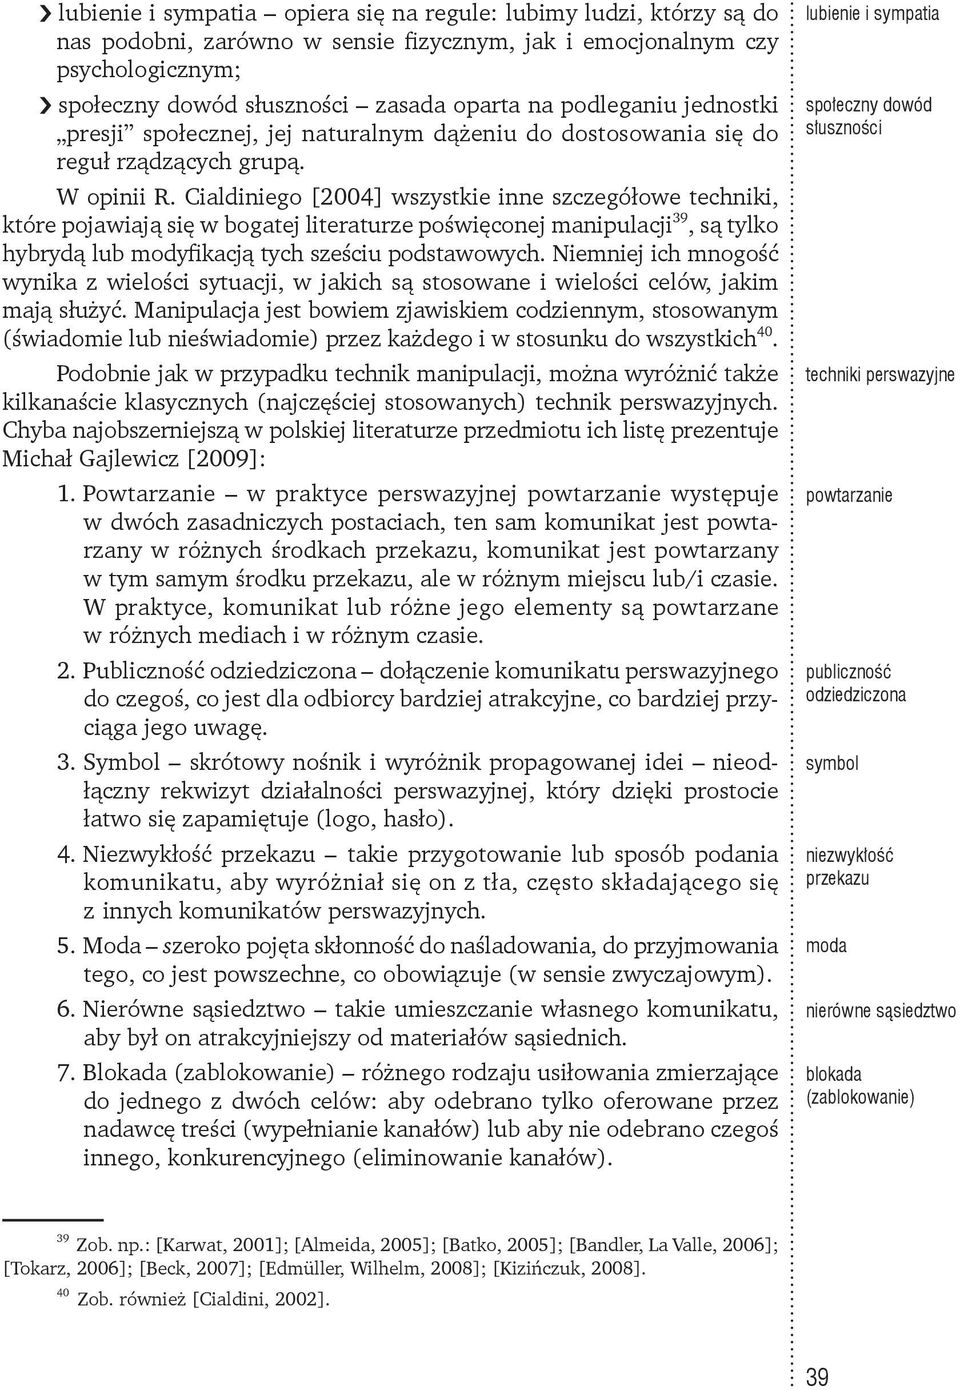 Cialdiniego [2004] wszystkie inne szczegółowe techniki, które pojawiają się w bogatej literaturze poświęconej manipulacji 39, są tylko hybrydą lub modyfikacją tych sześciu podstawowych.